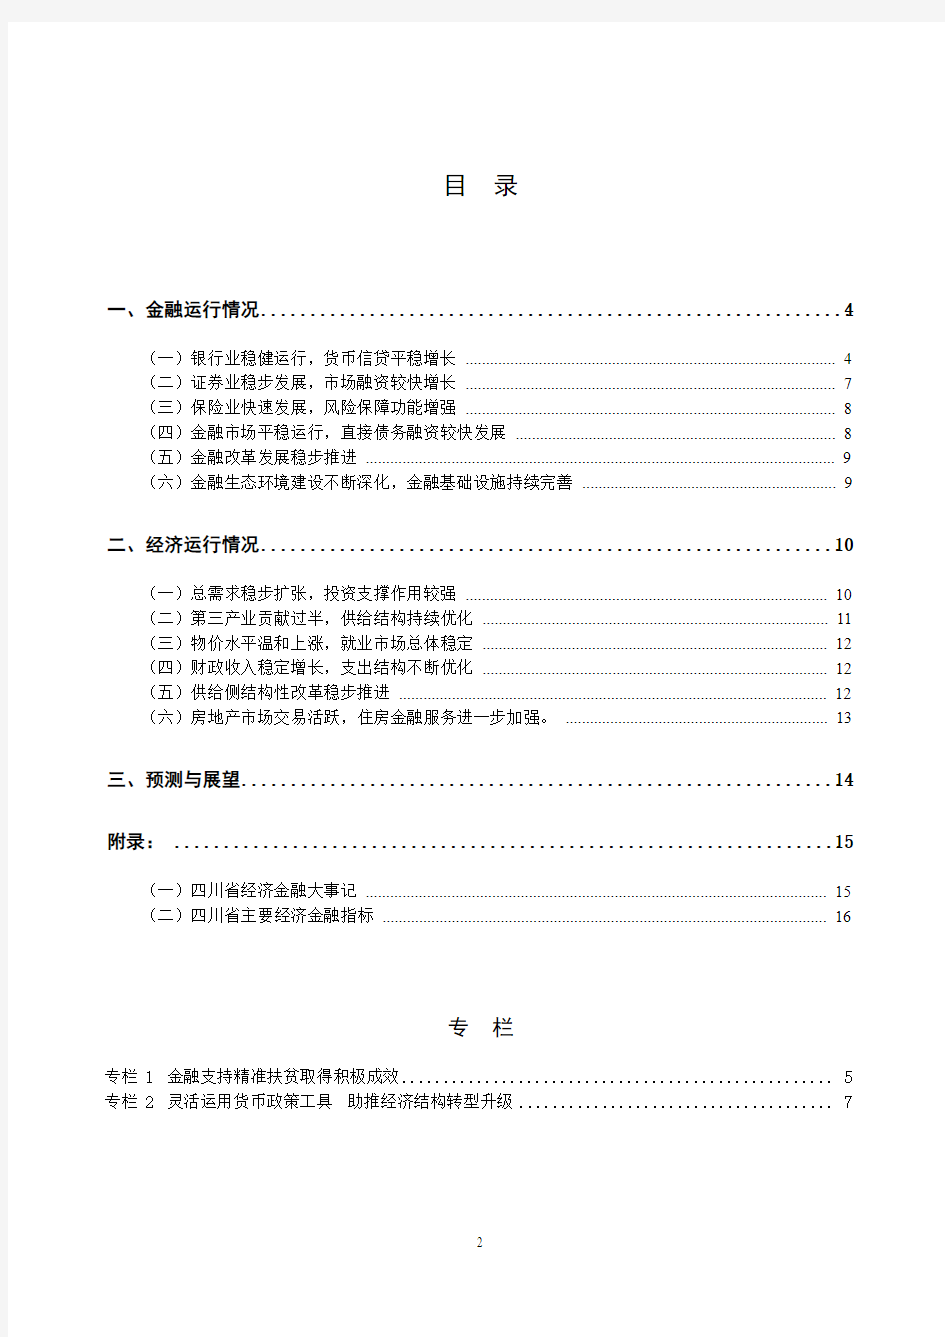 四川省金融运行报告(2017